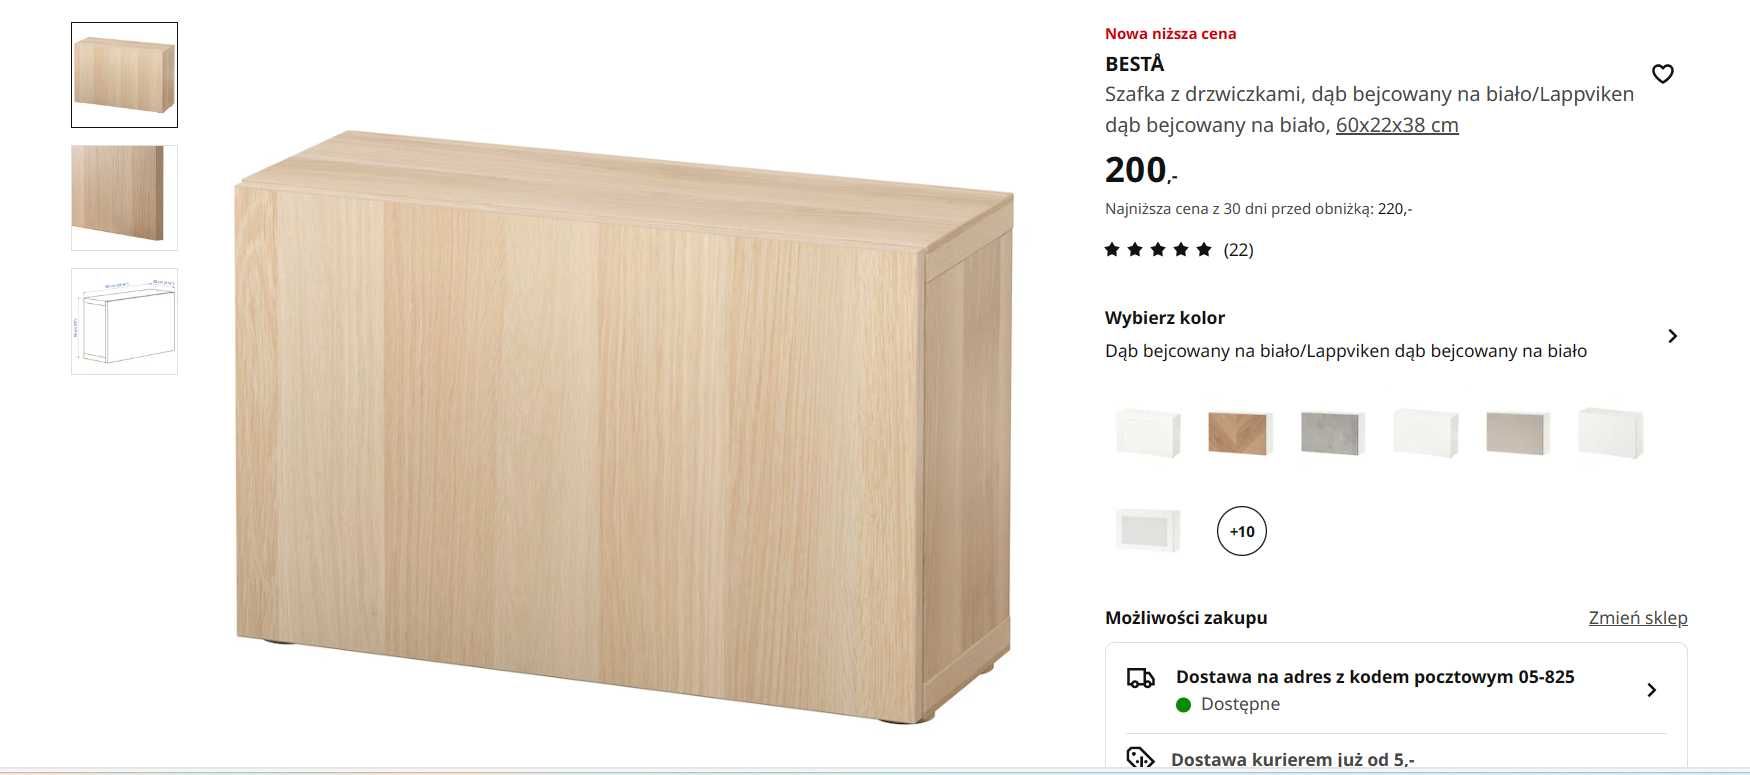 Ikea Besta witryny lub pełne drzwi dąb 60x22x64 i 60x22x38 zestaw 4szt